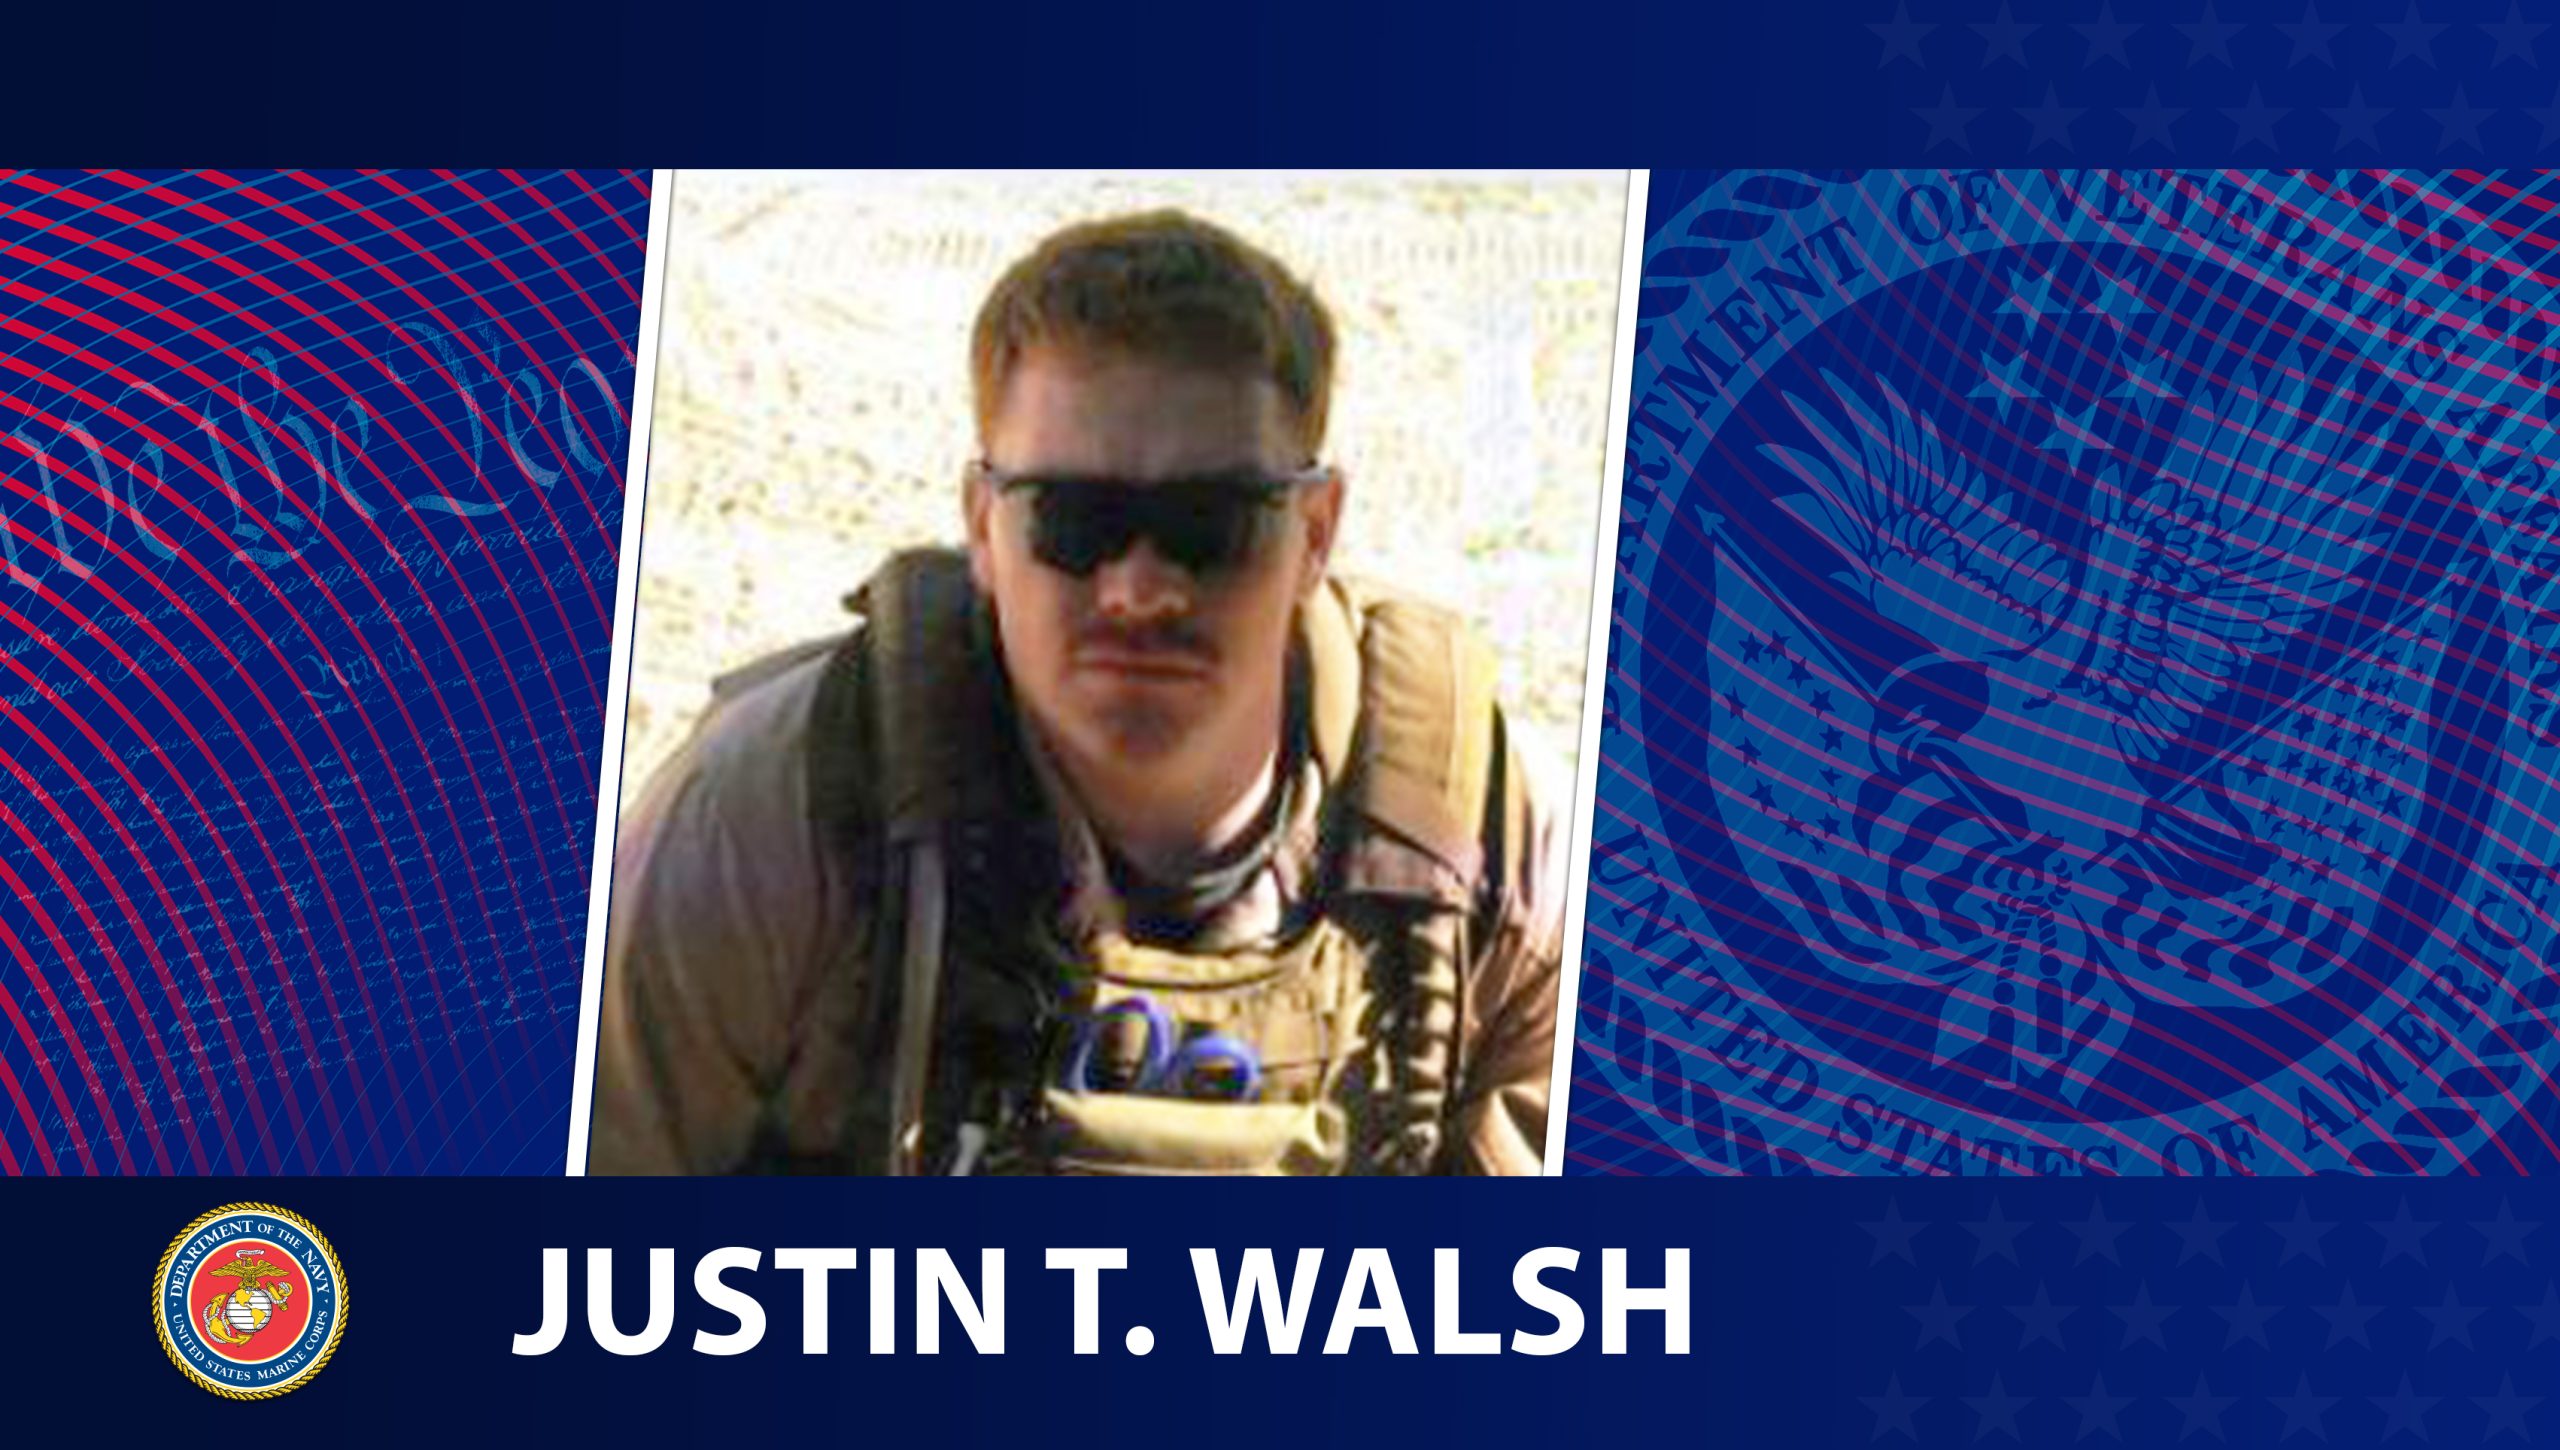 Read Honoring Veterans: Justin Tyler Walsh